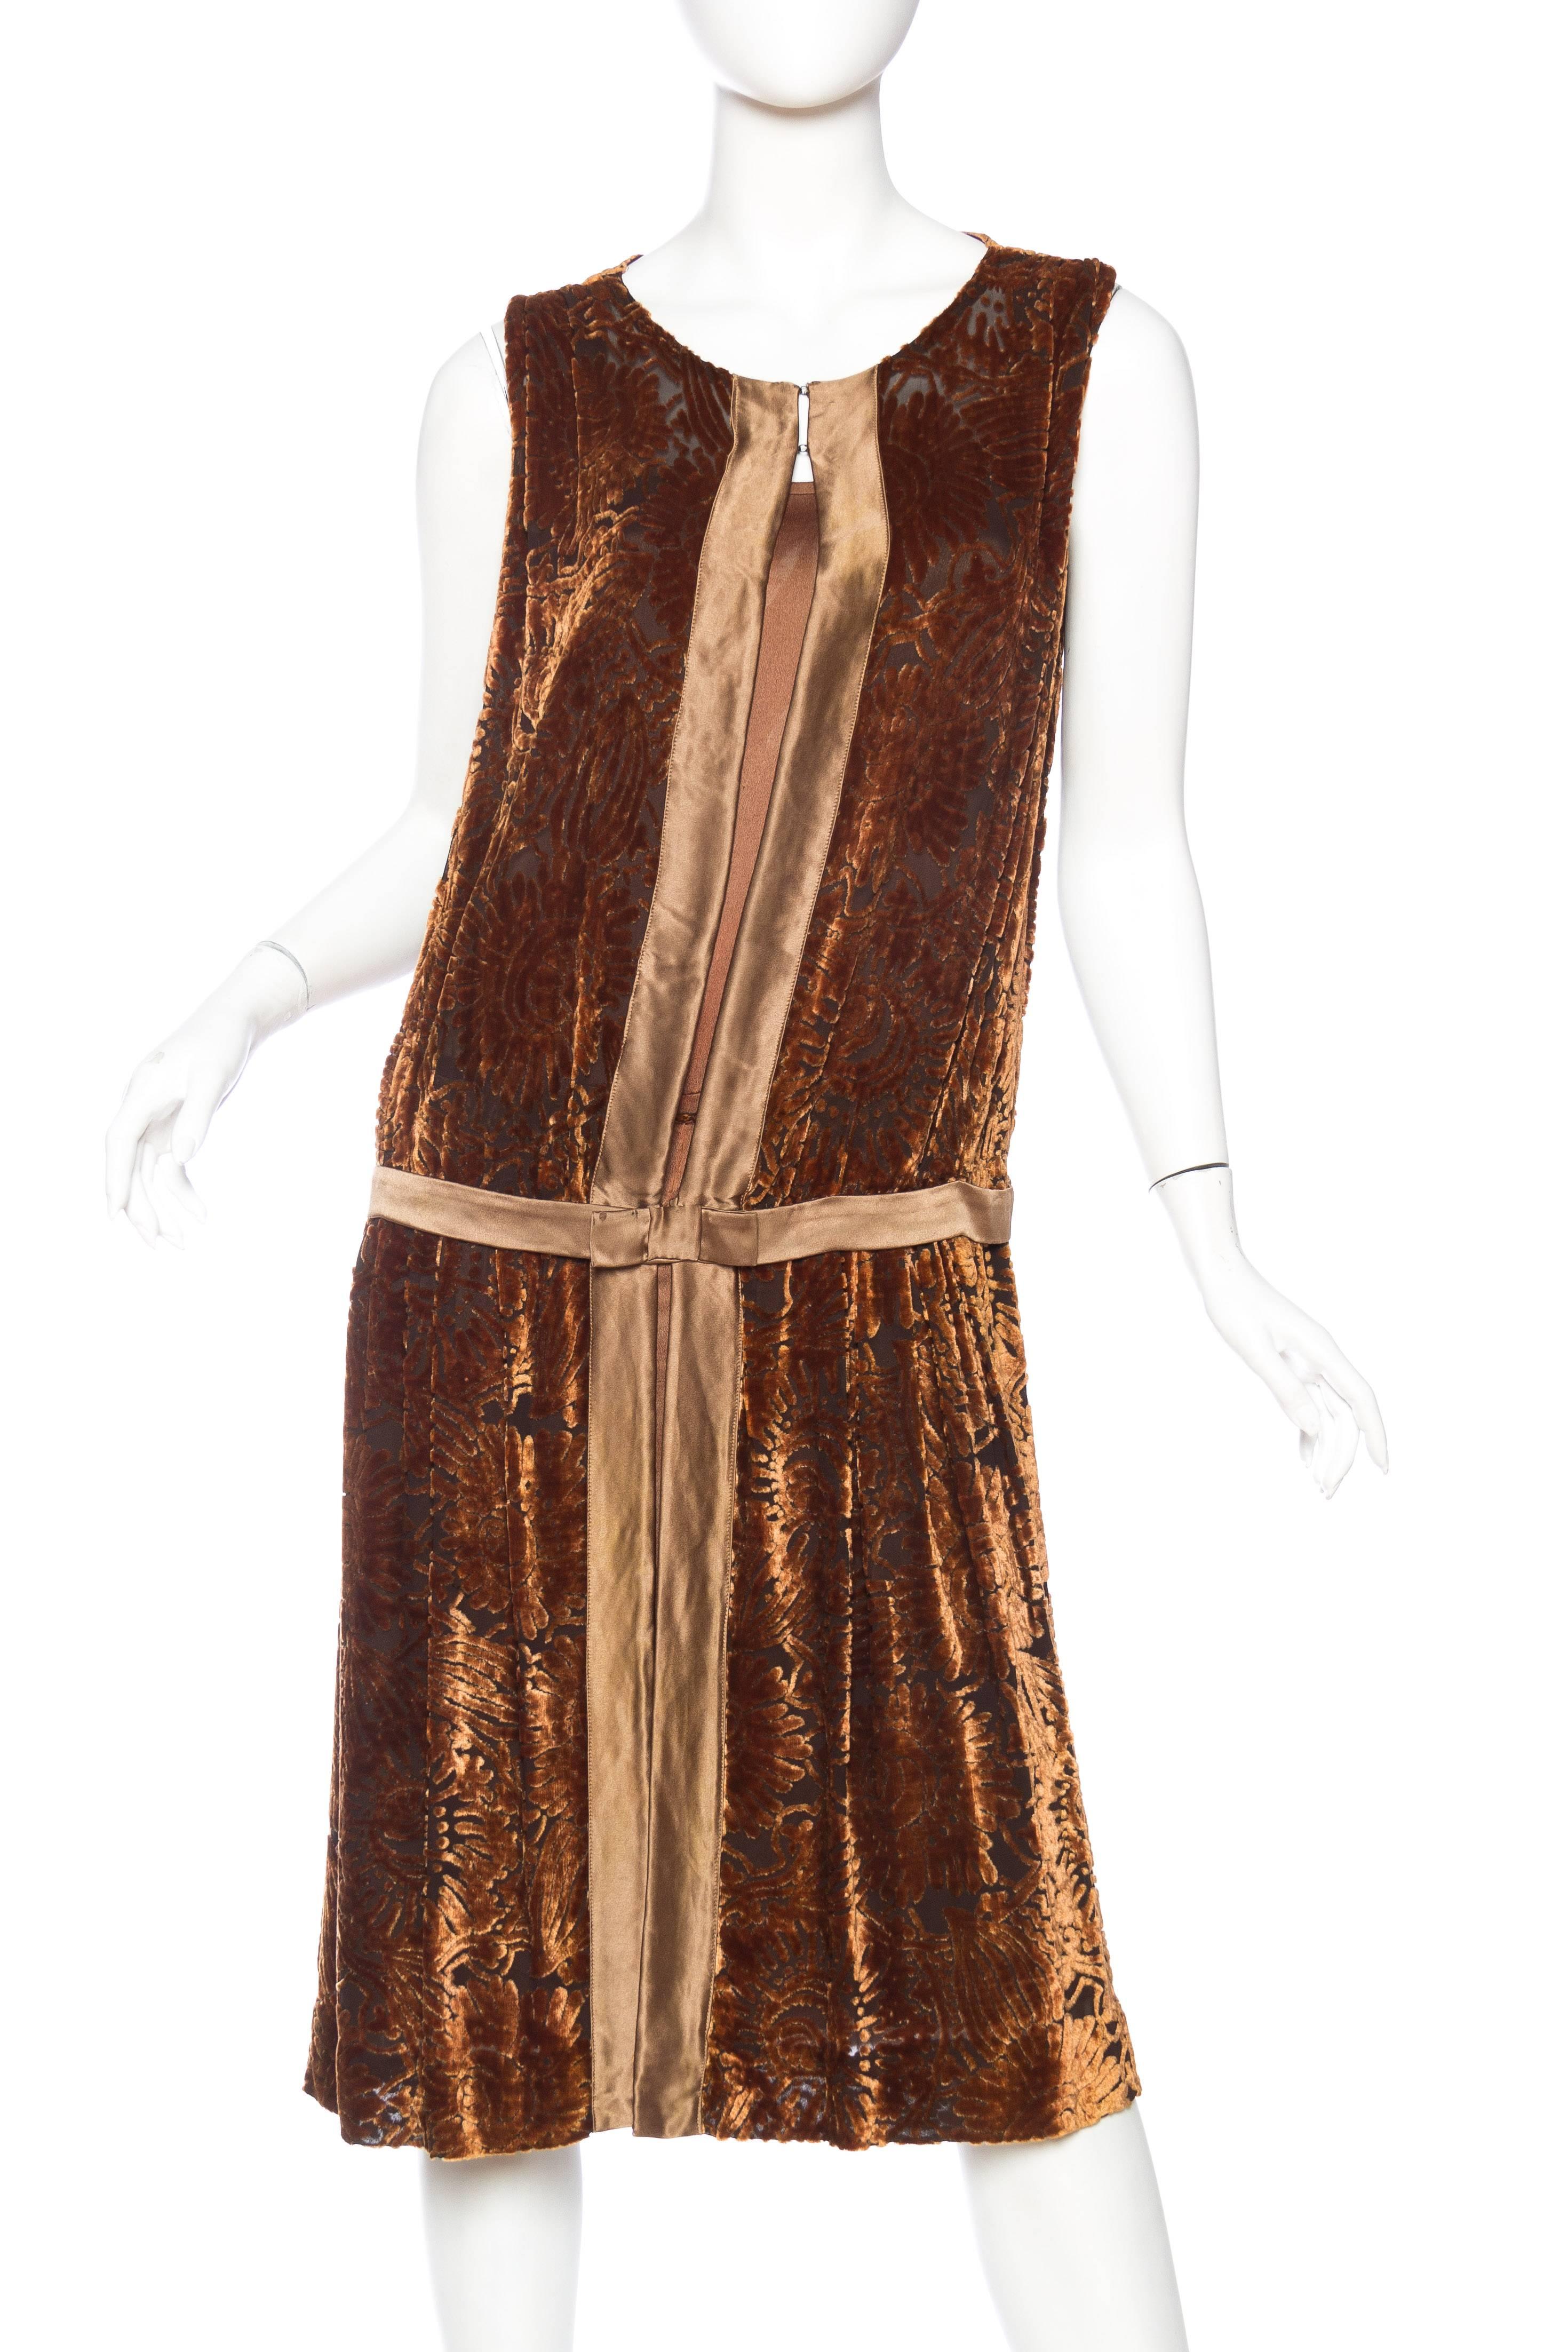 1920s velvet dress